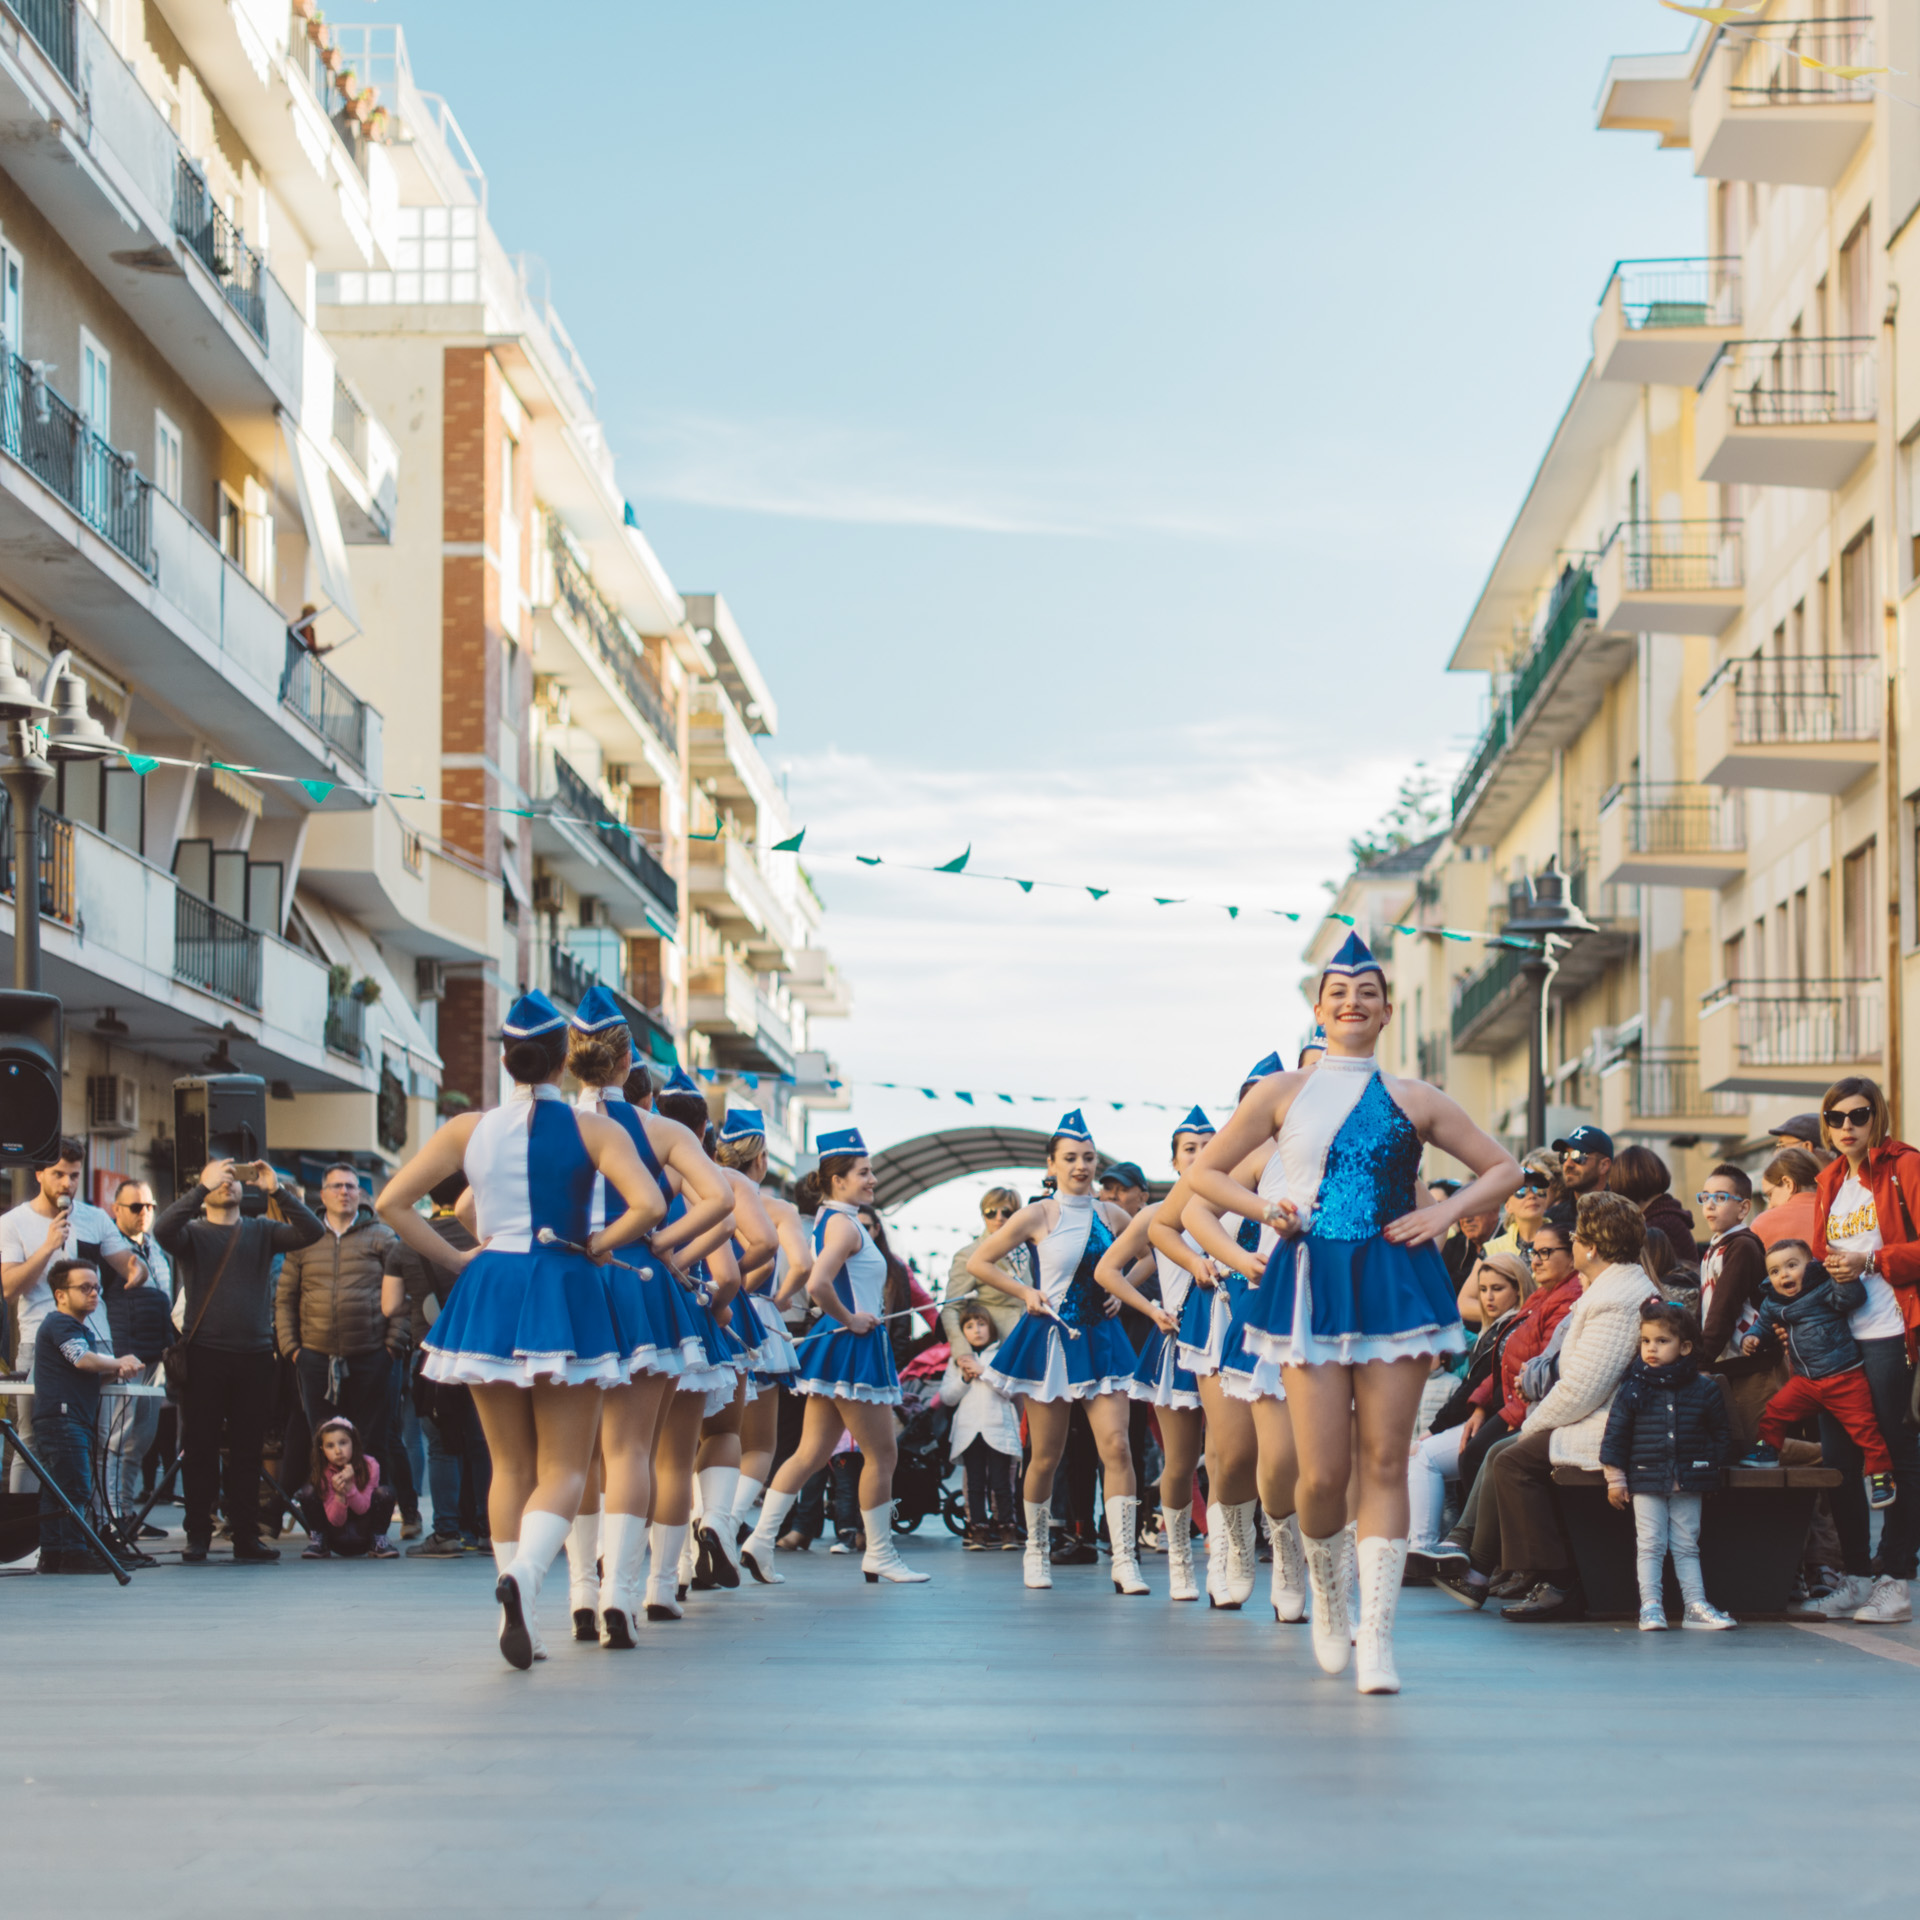 Le Sailors Majorettes di Scafati si esibiscono per il pubblico durante un raduno di bande e majorettes a Maiori. Maiori, SA, 2018. © Agnese Morganti.